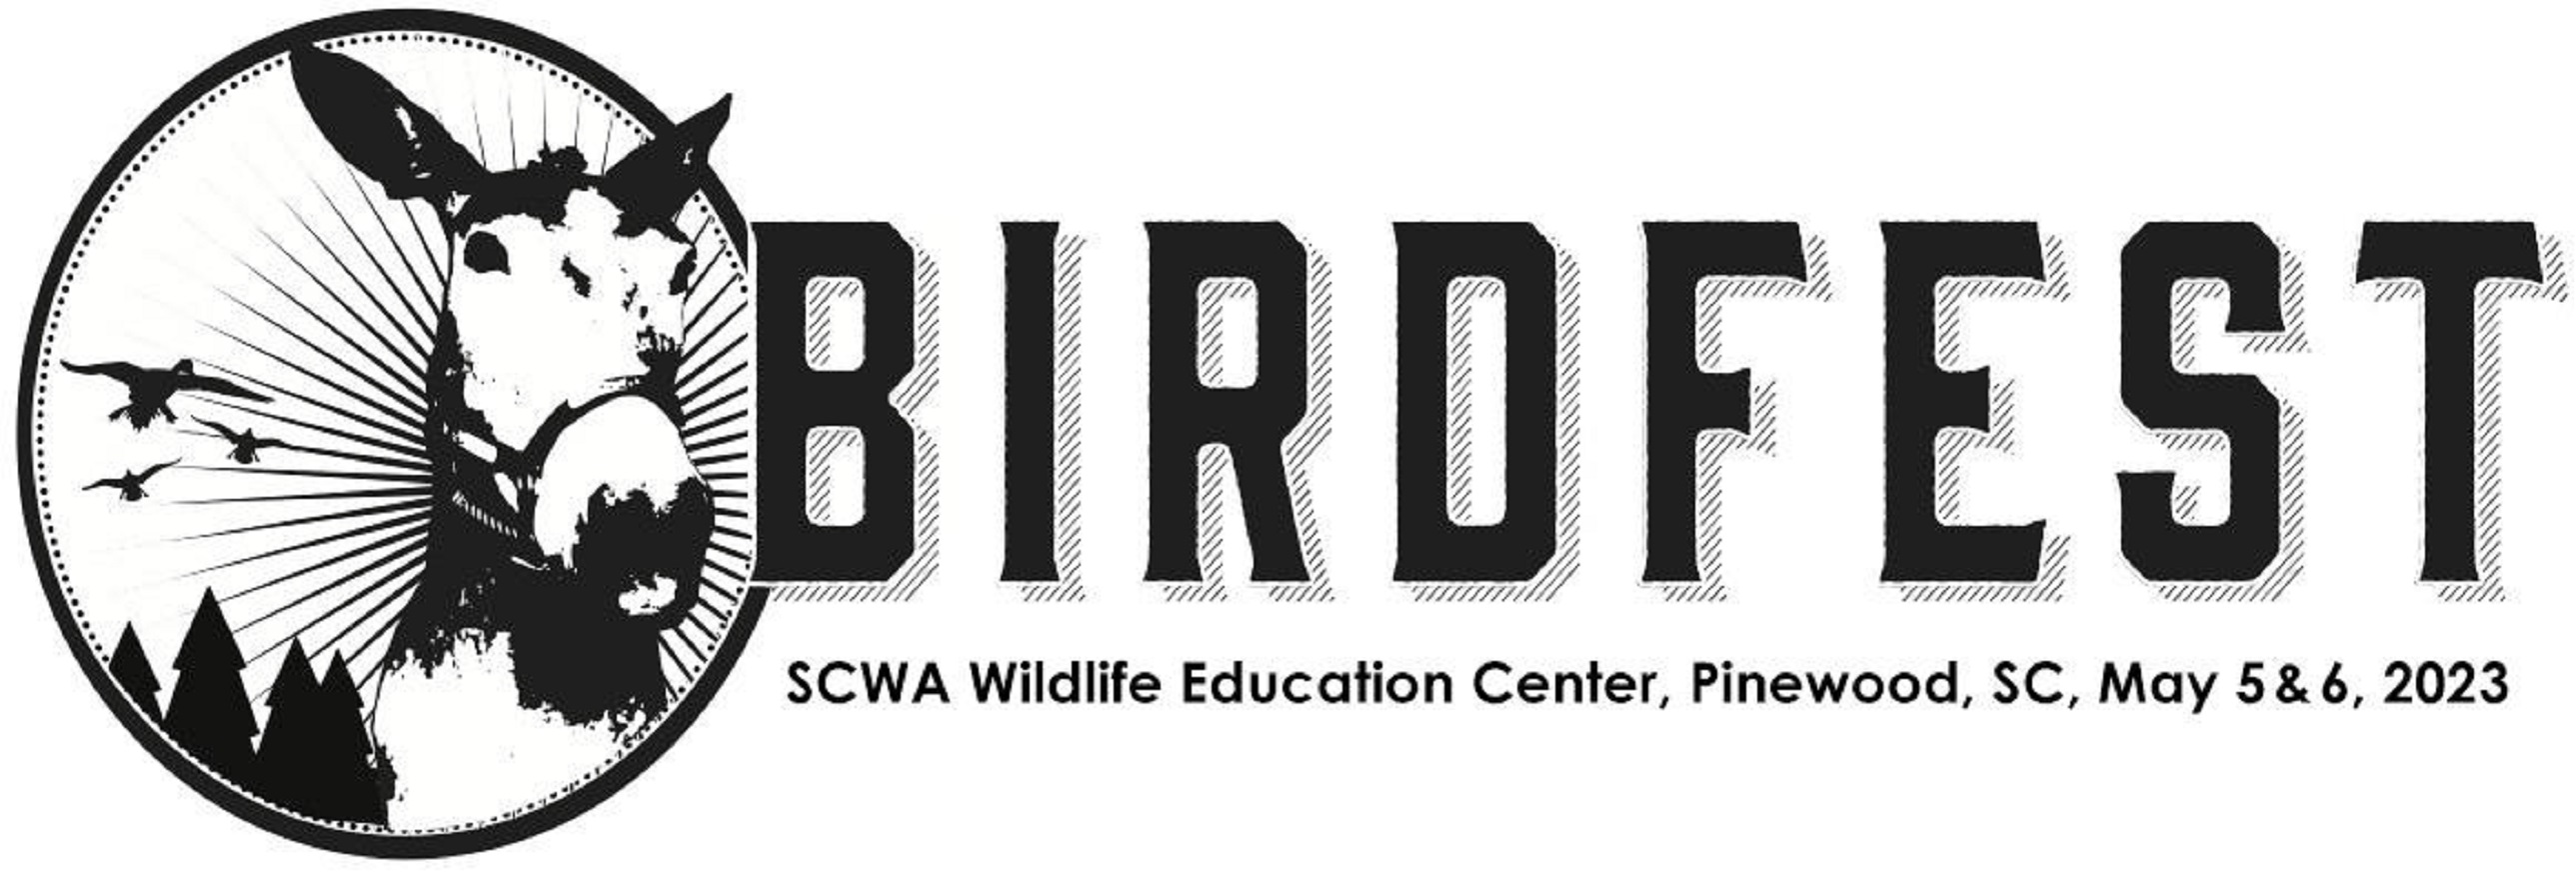 BirdFest Music Festival Returns on May 5-6 in Pinewood, SC